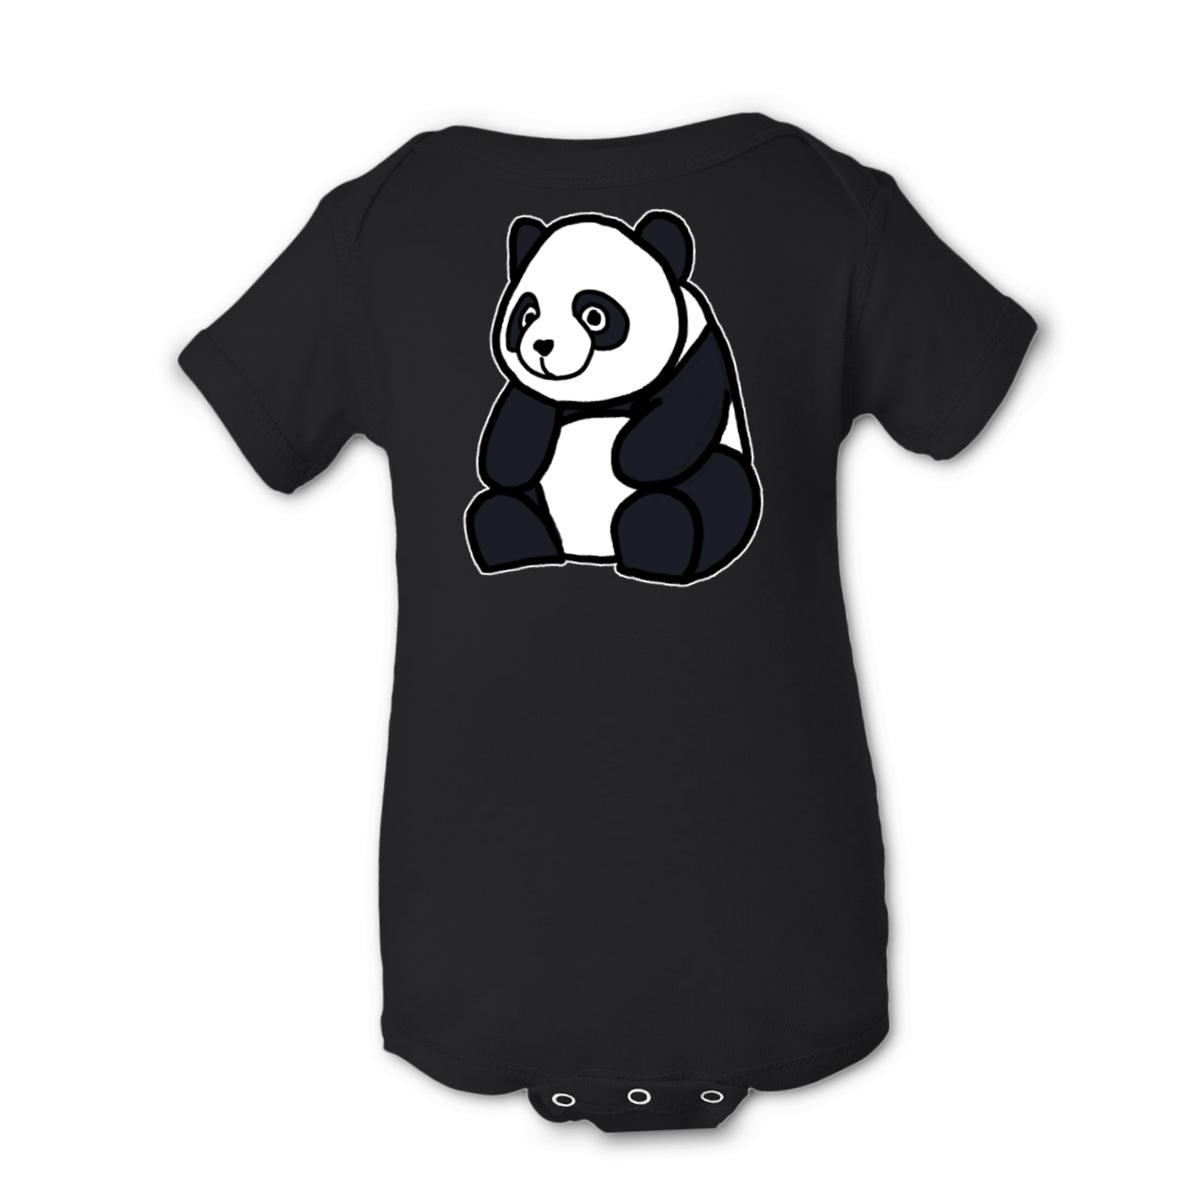 Panda Onesie 12M black